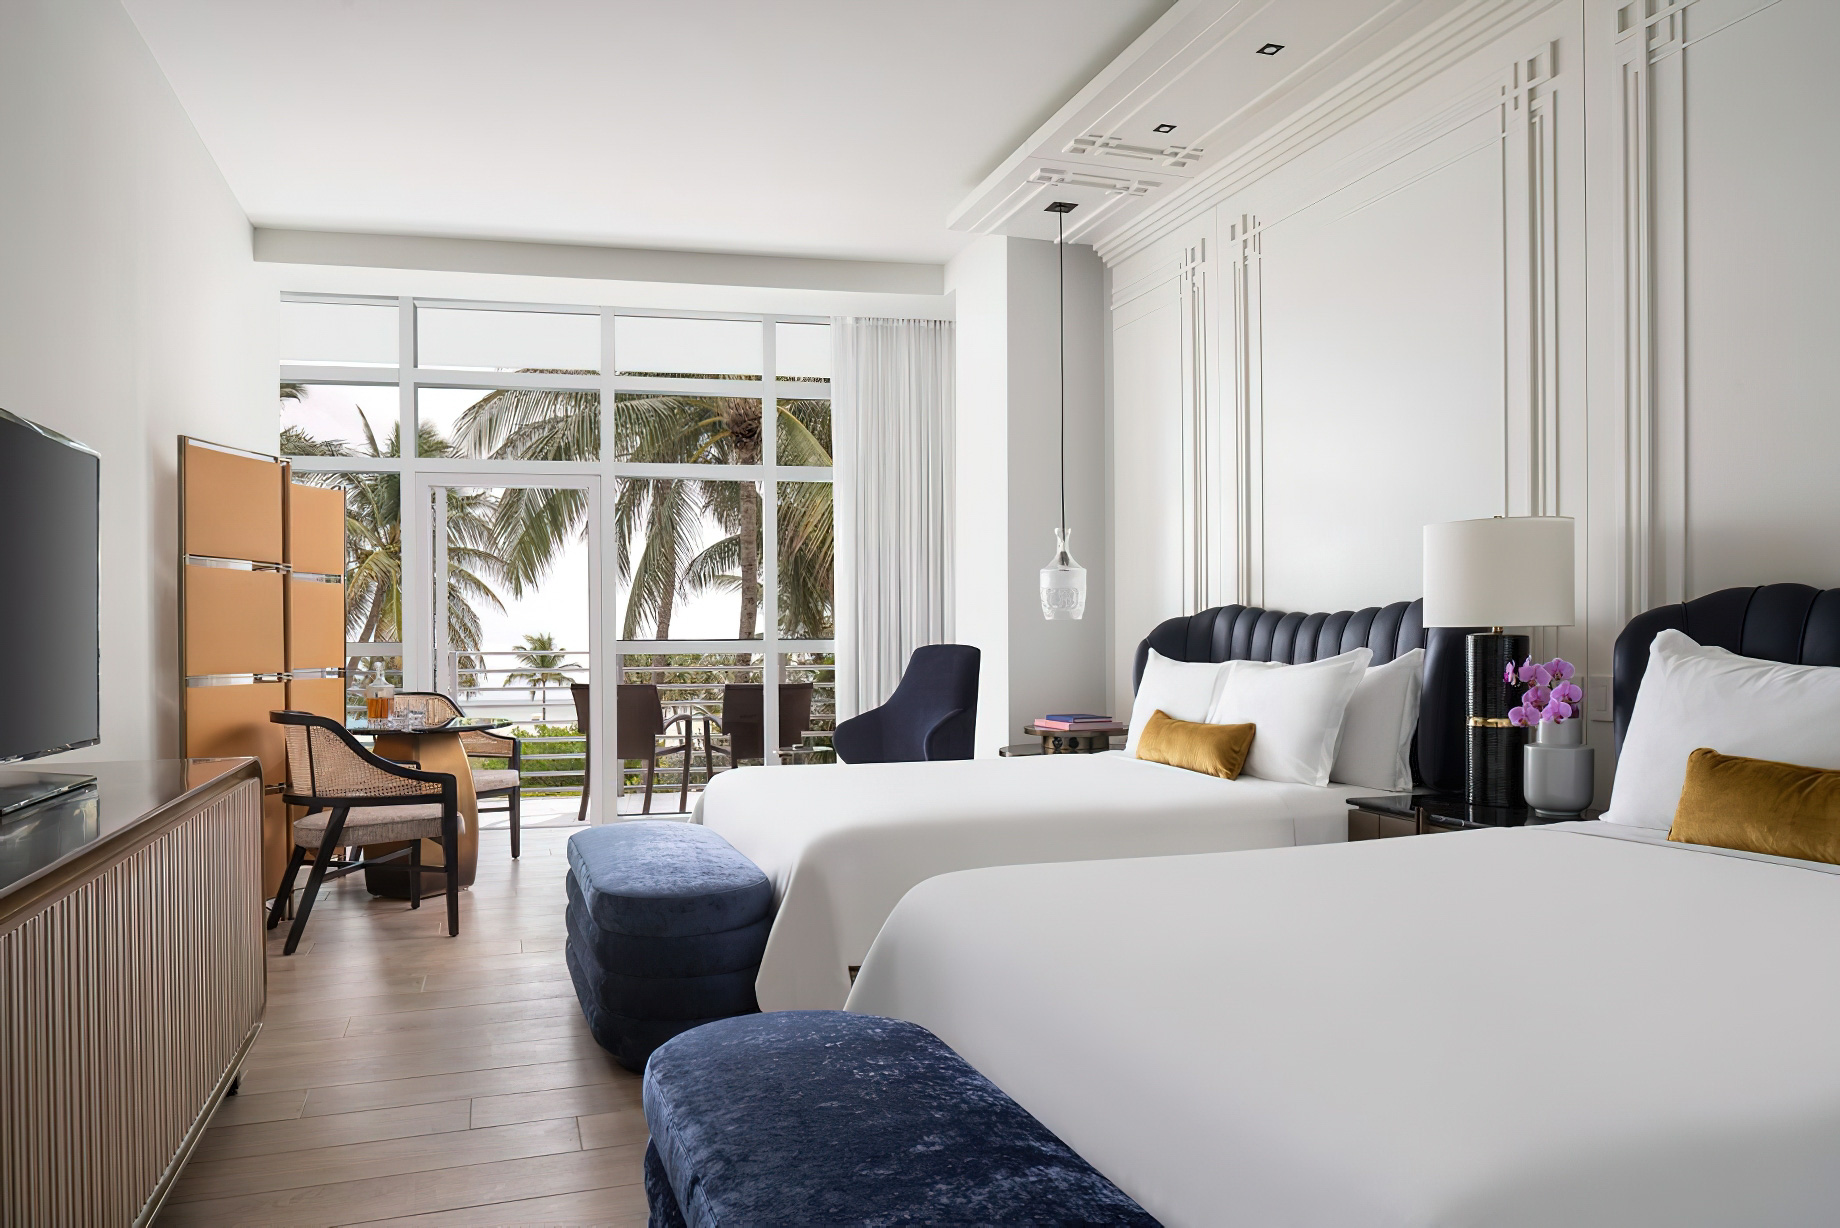 The Ritz-Carlton, South Beach Hotel – Miami Beach, FL, USA – Lanai Pool View Room